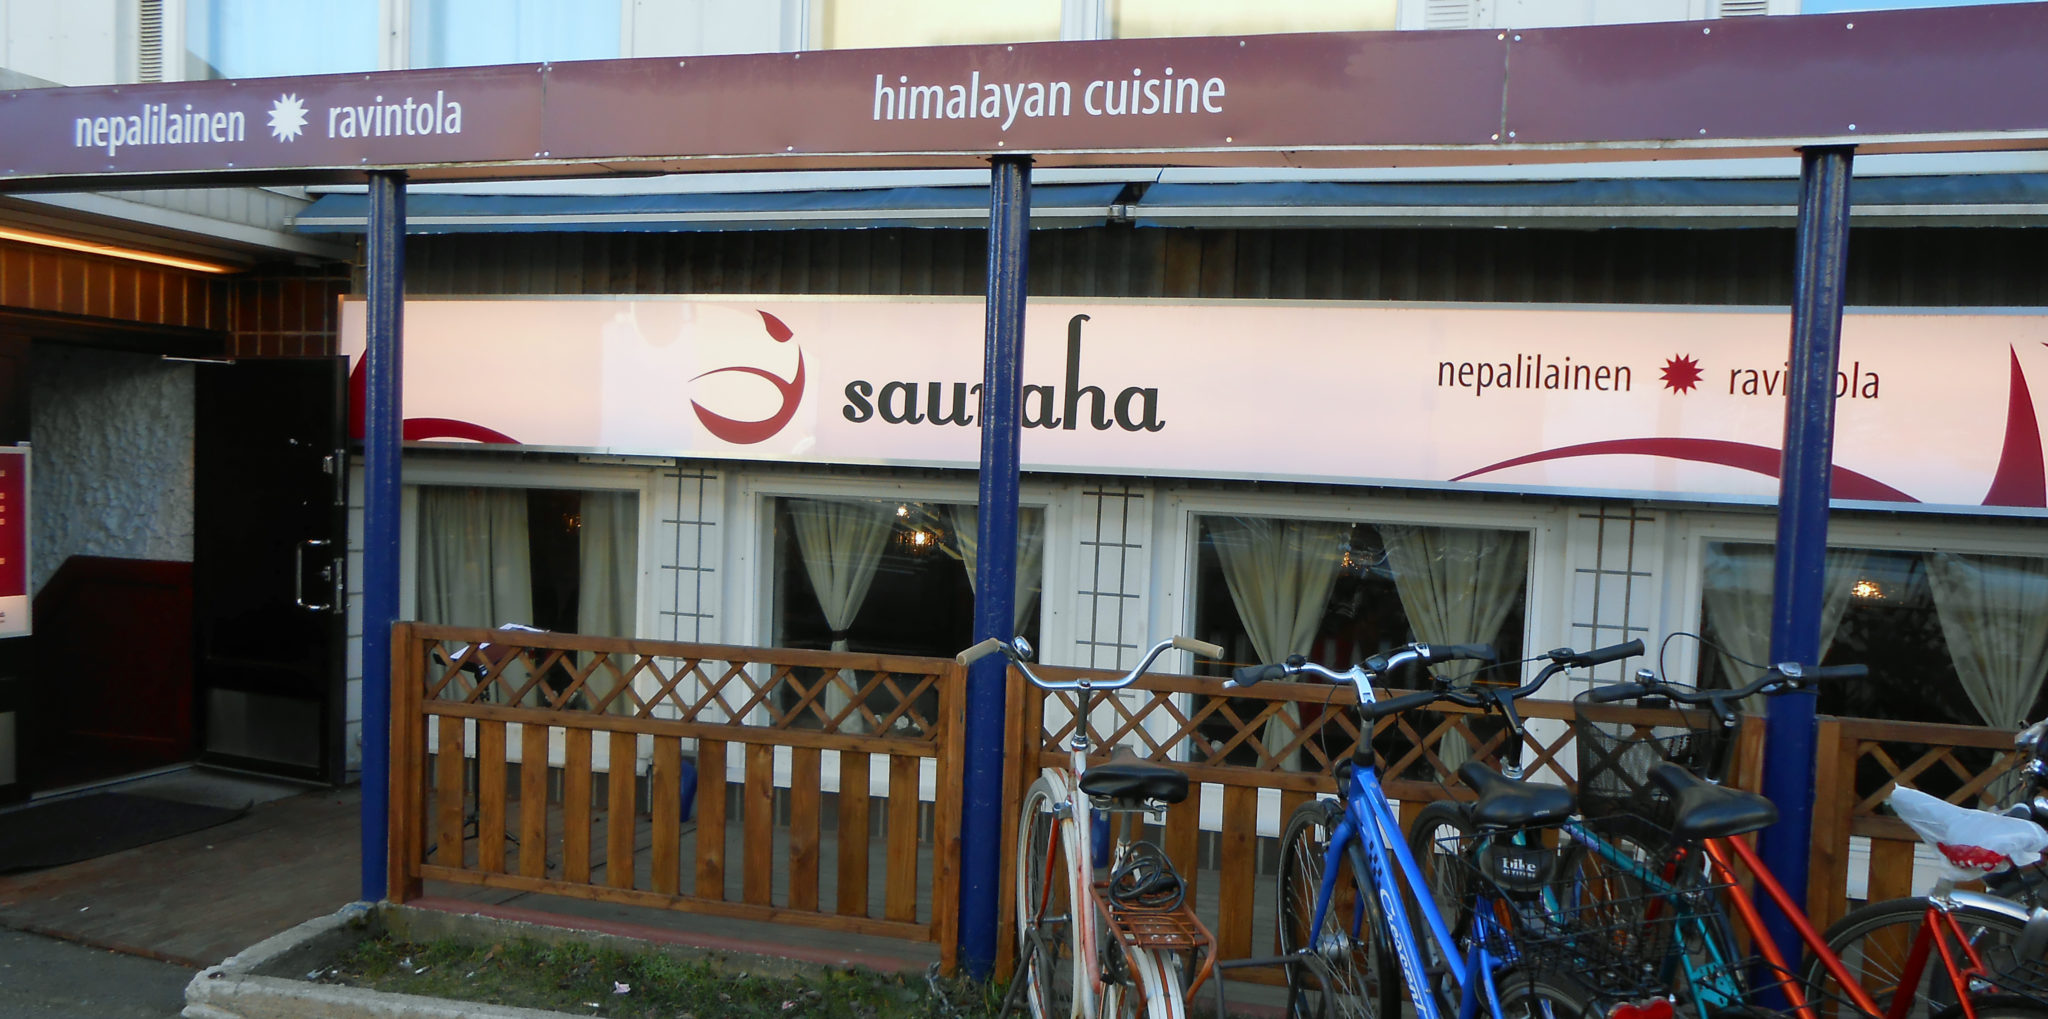 Sauraha - huippu nepalilainen ravintola Oulussa • Novus Aditus